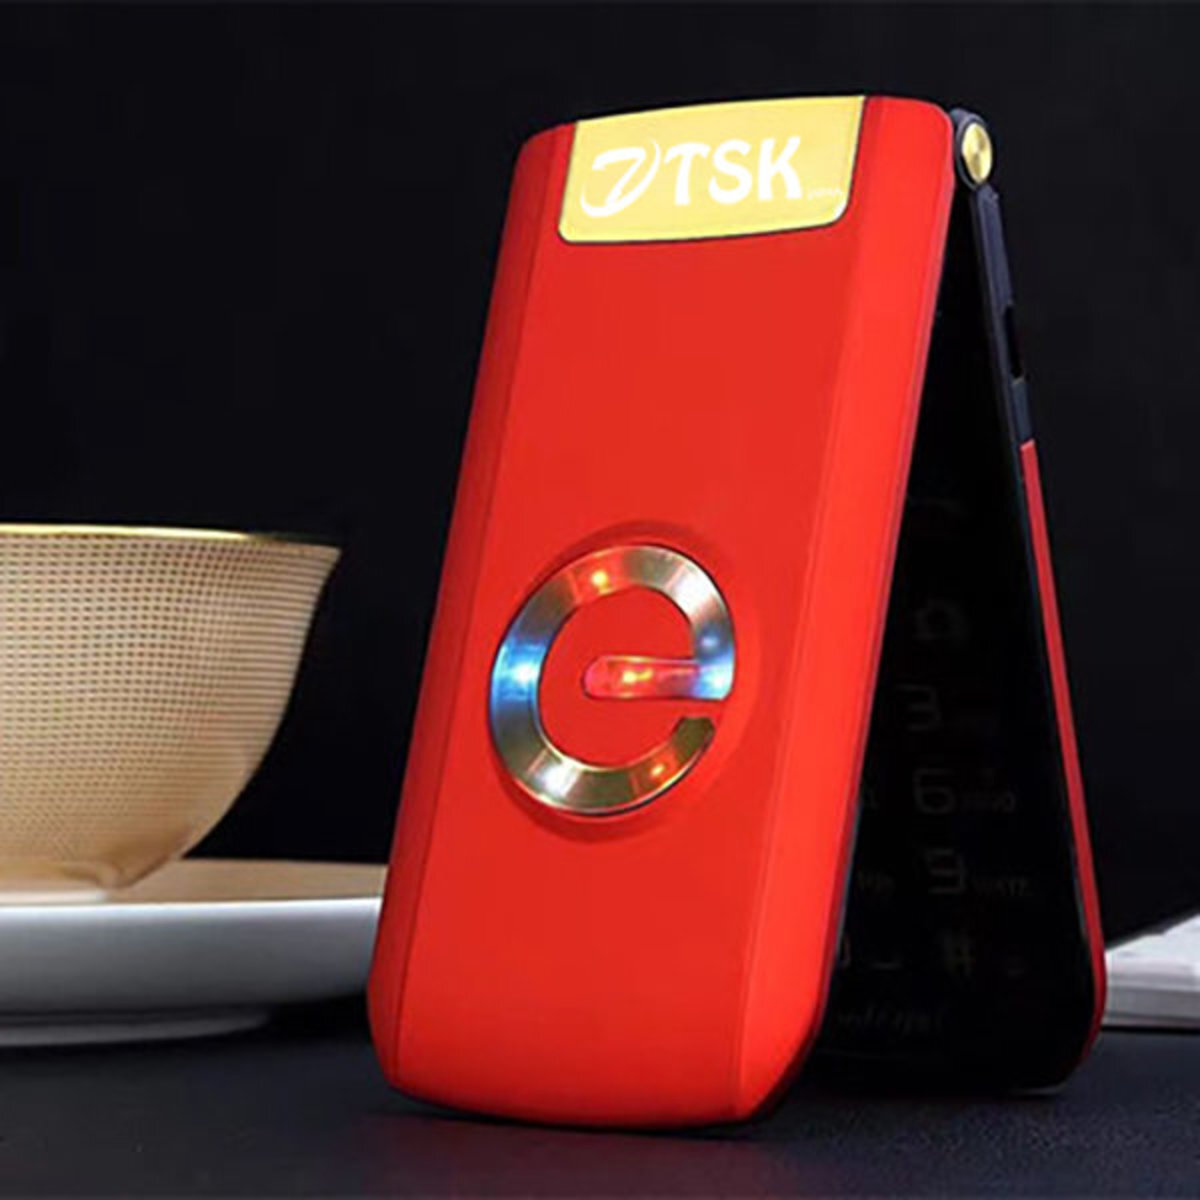 A812 長者折合式手機(紅色) P1519